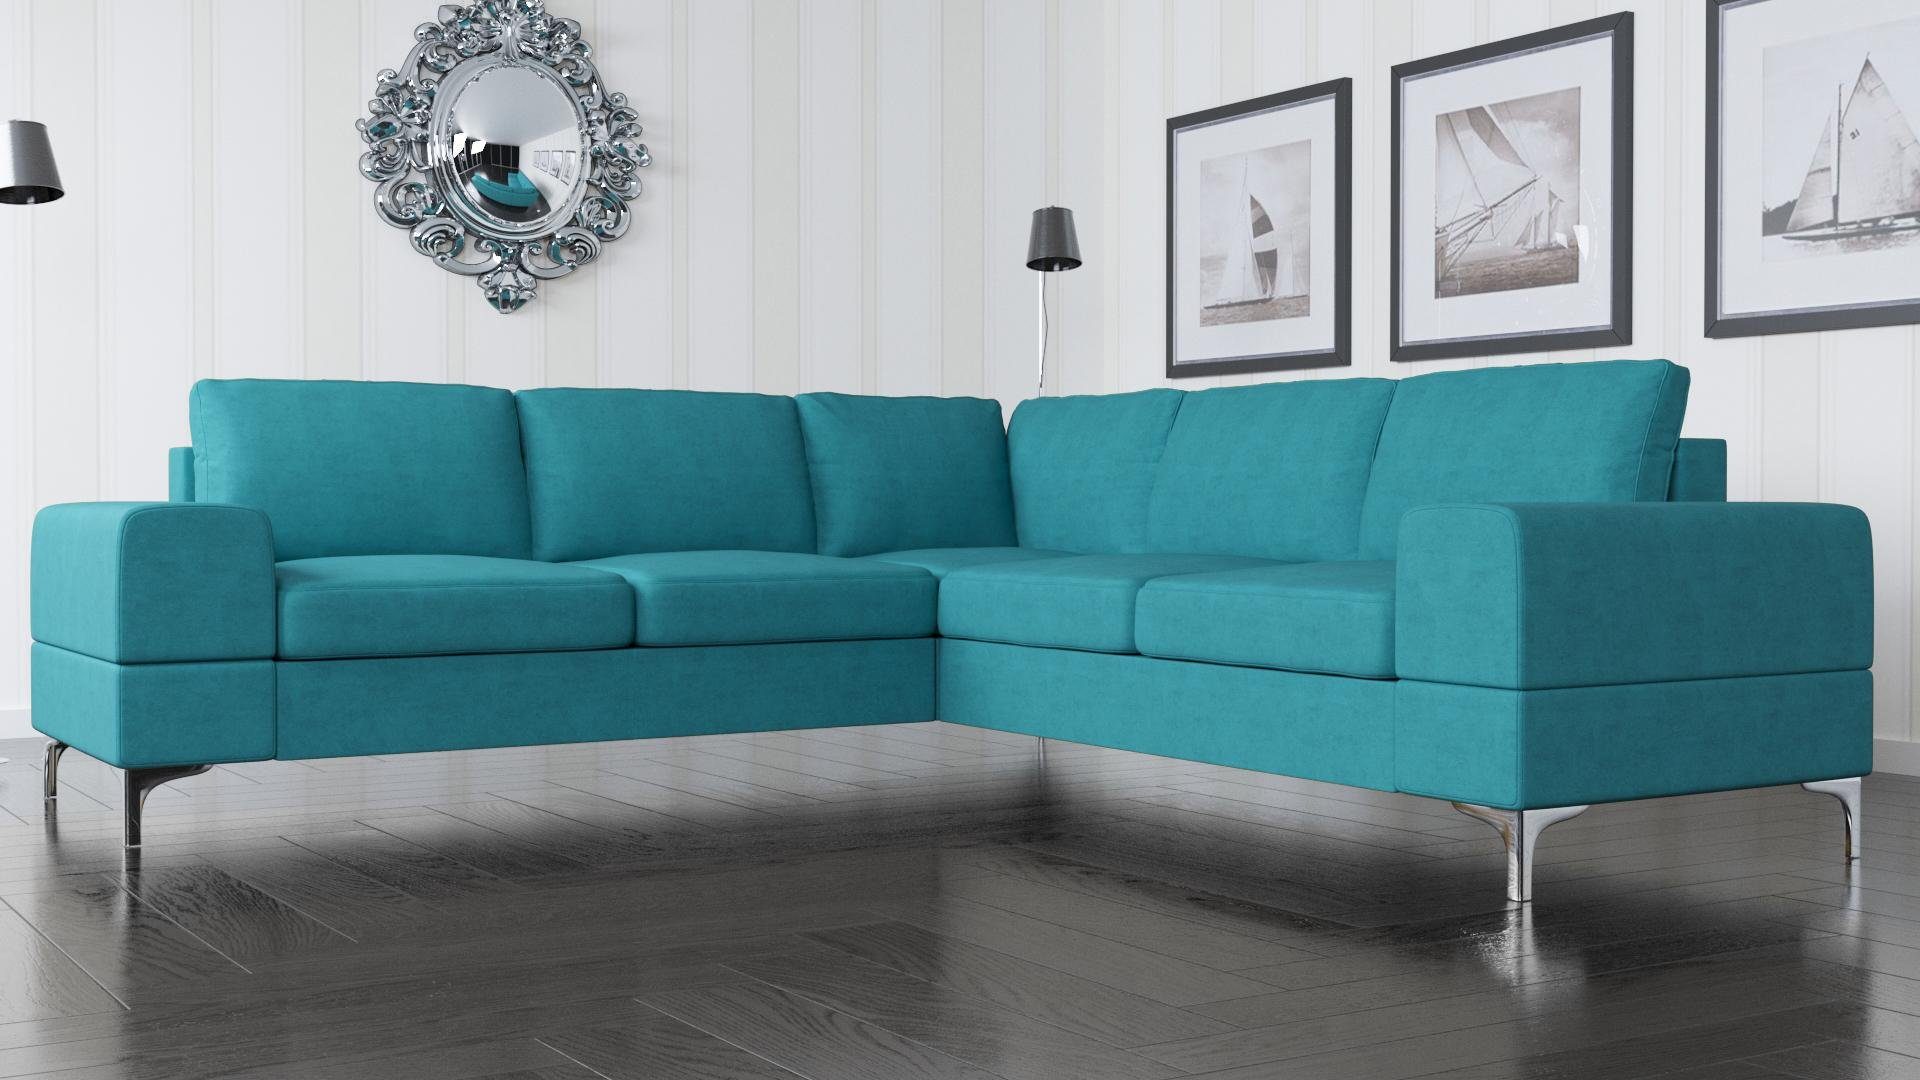 JVmoebel Ecksofa, Couch Türkis Blau Ecksofa Textil L-Form Möbel Design Wohnzimmer Modern